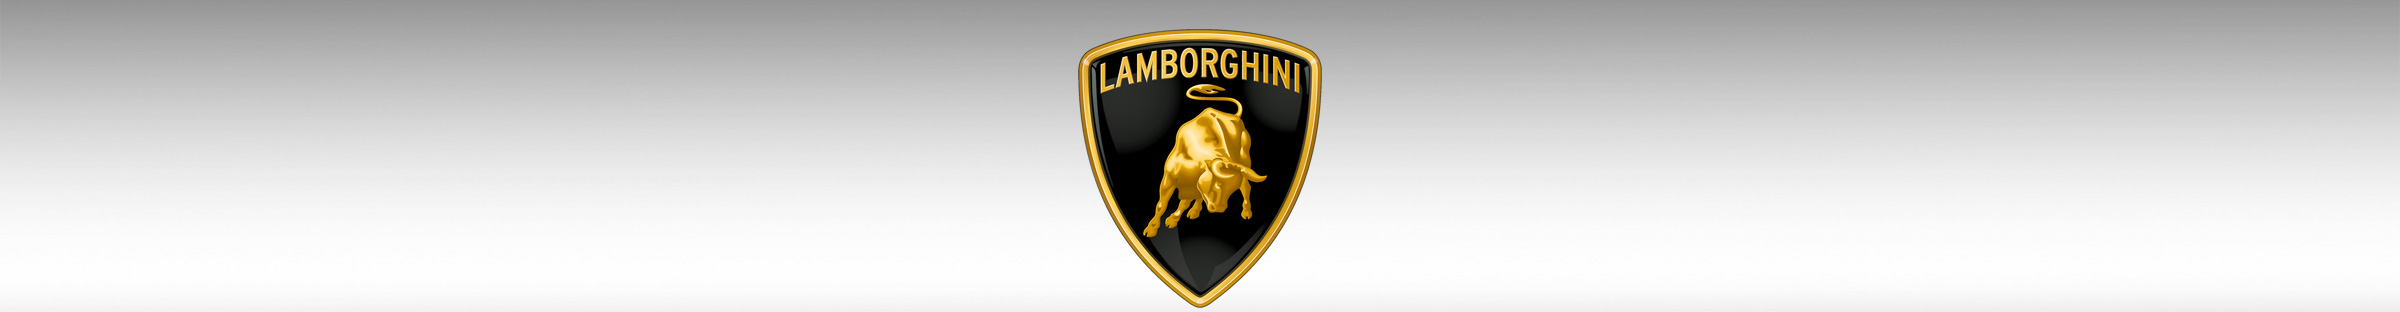 Lamborghini at the Sac Auto show